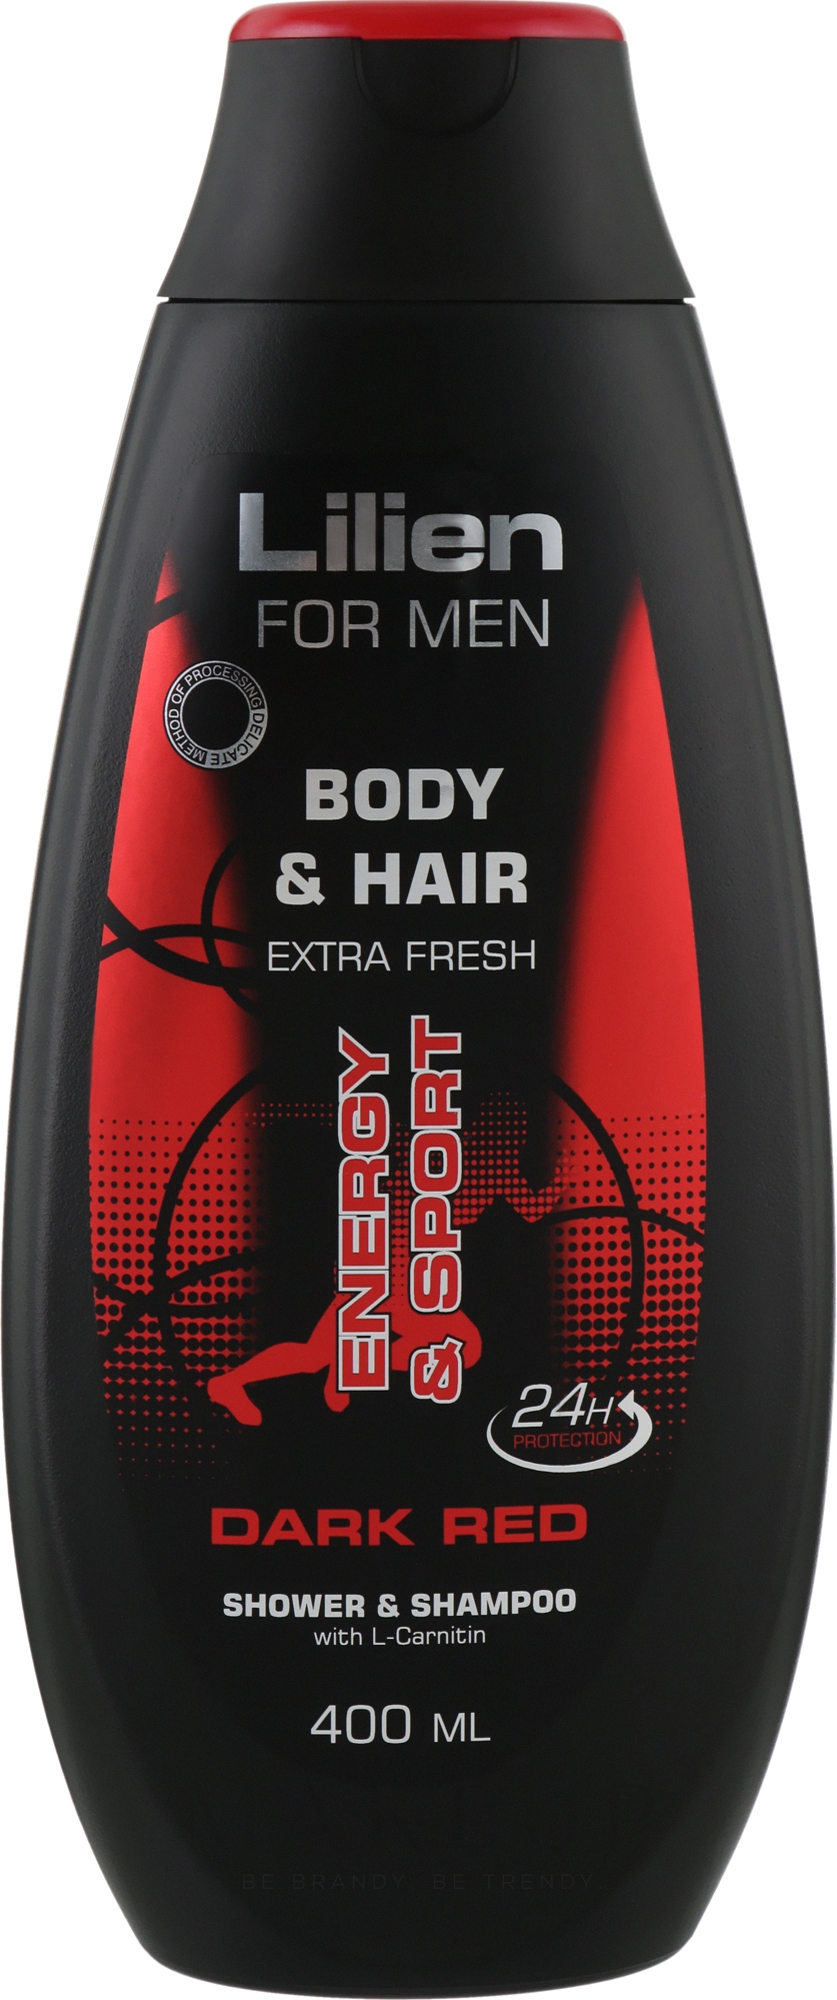 Shampoo-Duschgel für Männer - Lilien For Men Body & Hair Dark Red Shower & Shampoo — Bild 400 ml